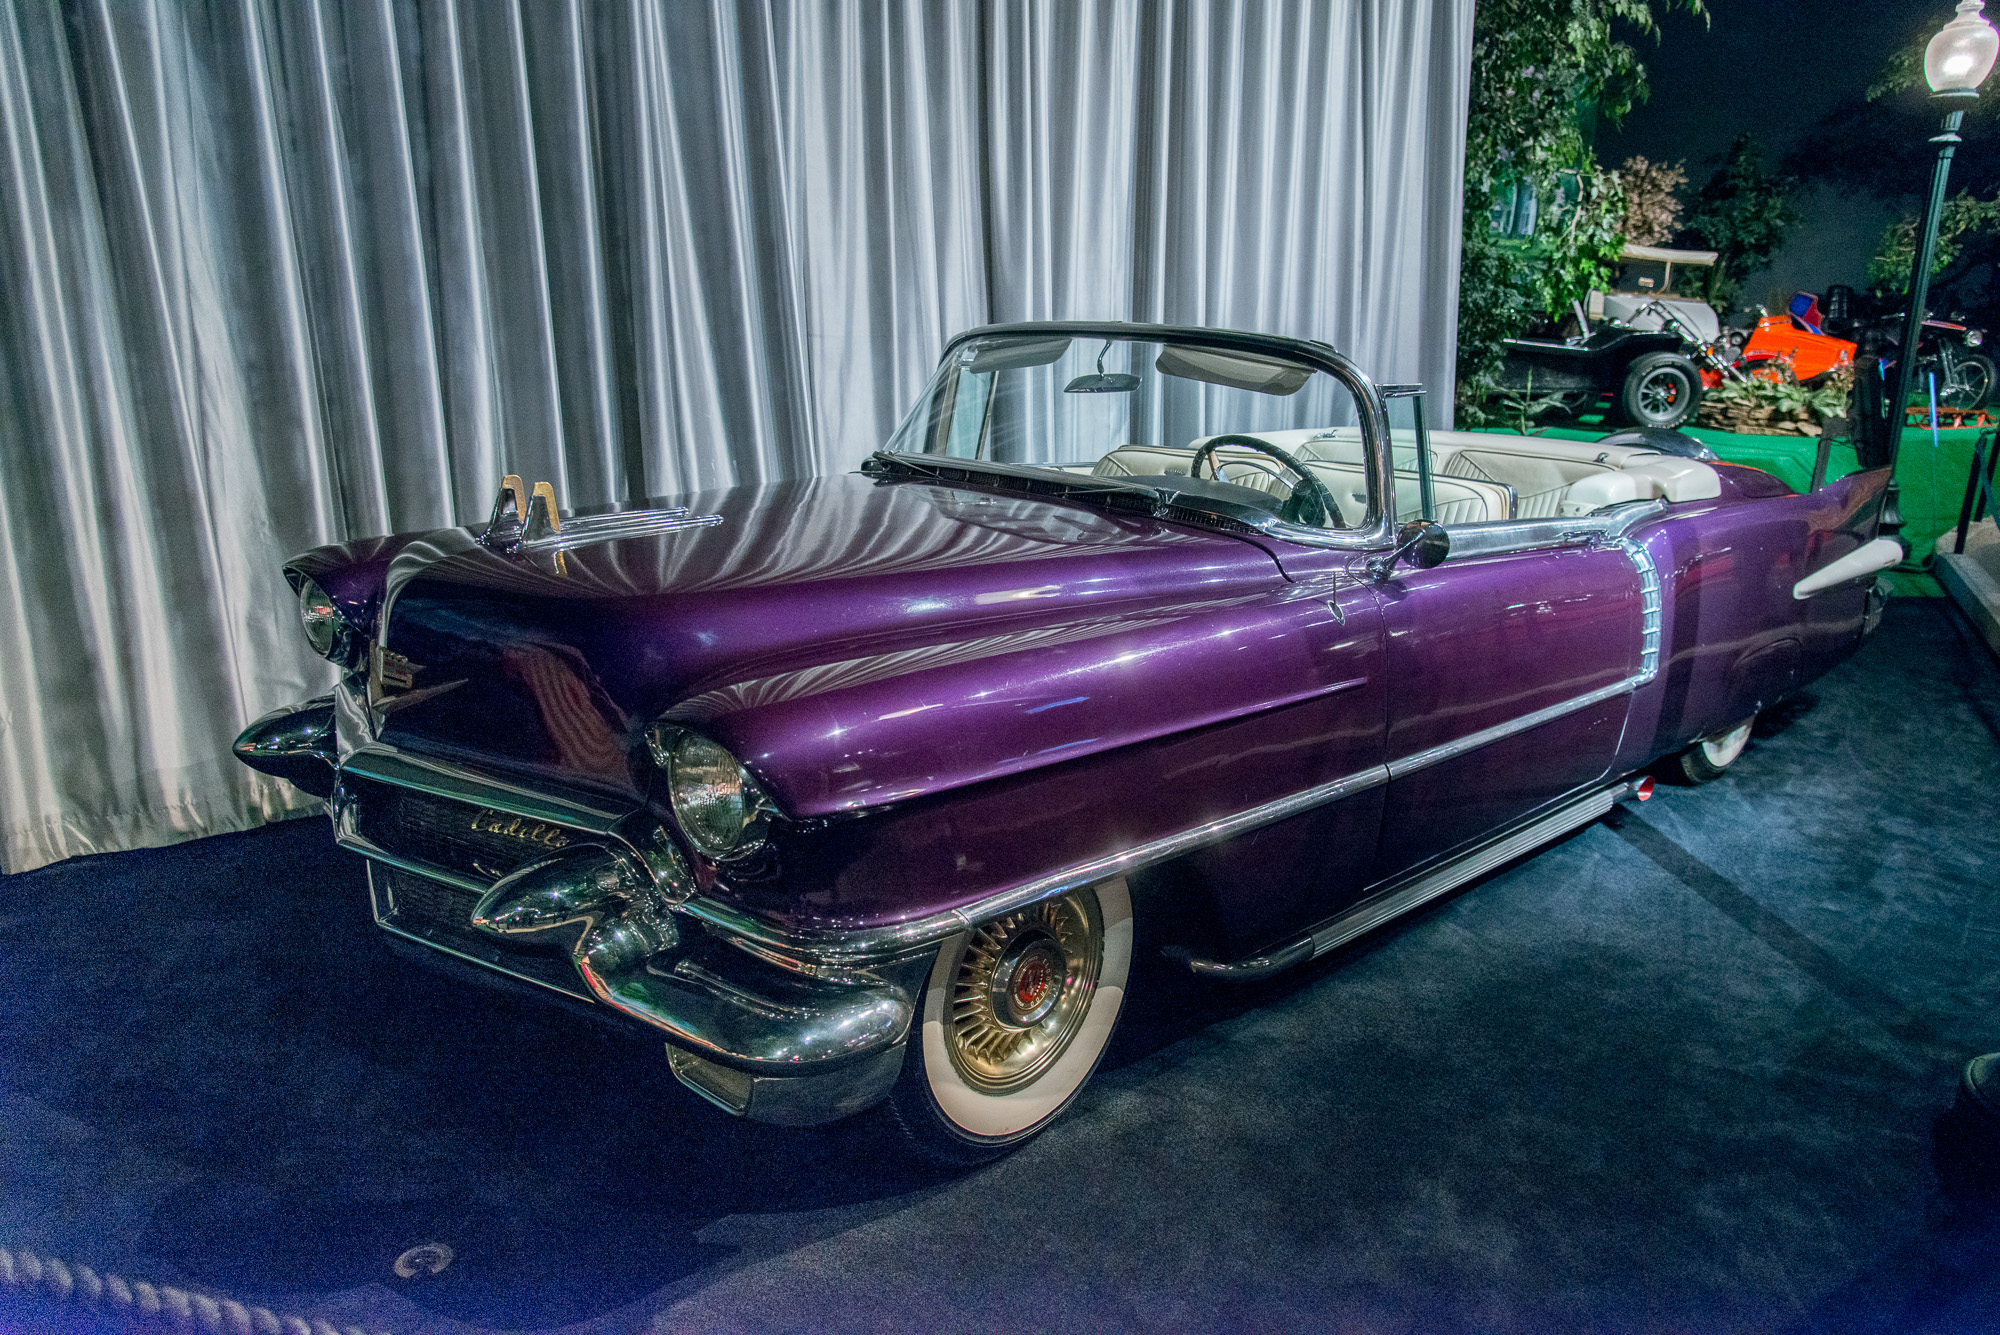 Graceland, la maison d'Elvis Presley. Une partie de sa collection de voitures.